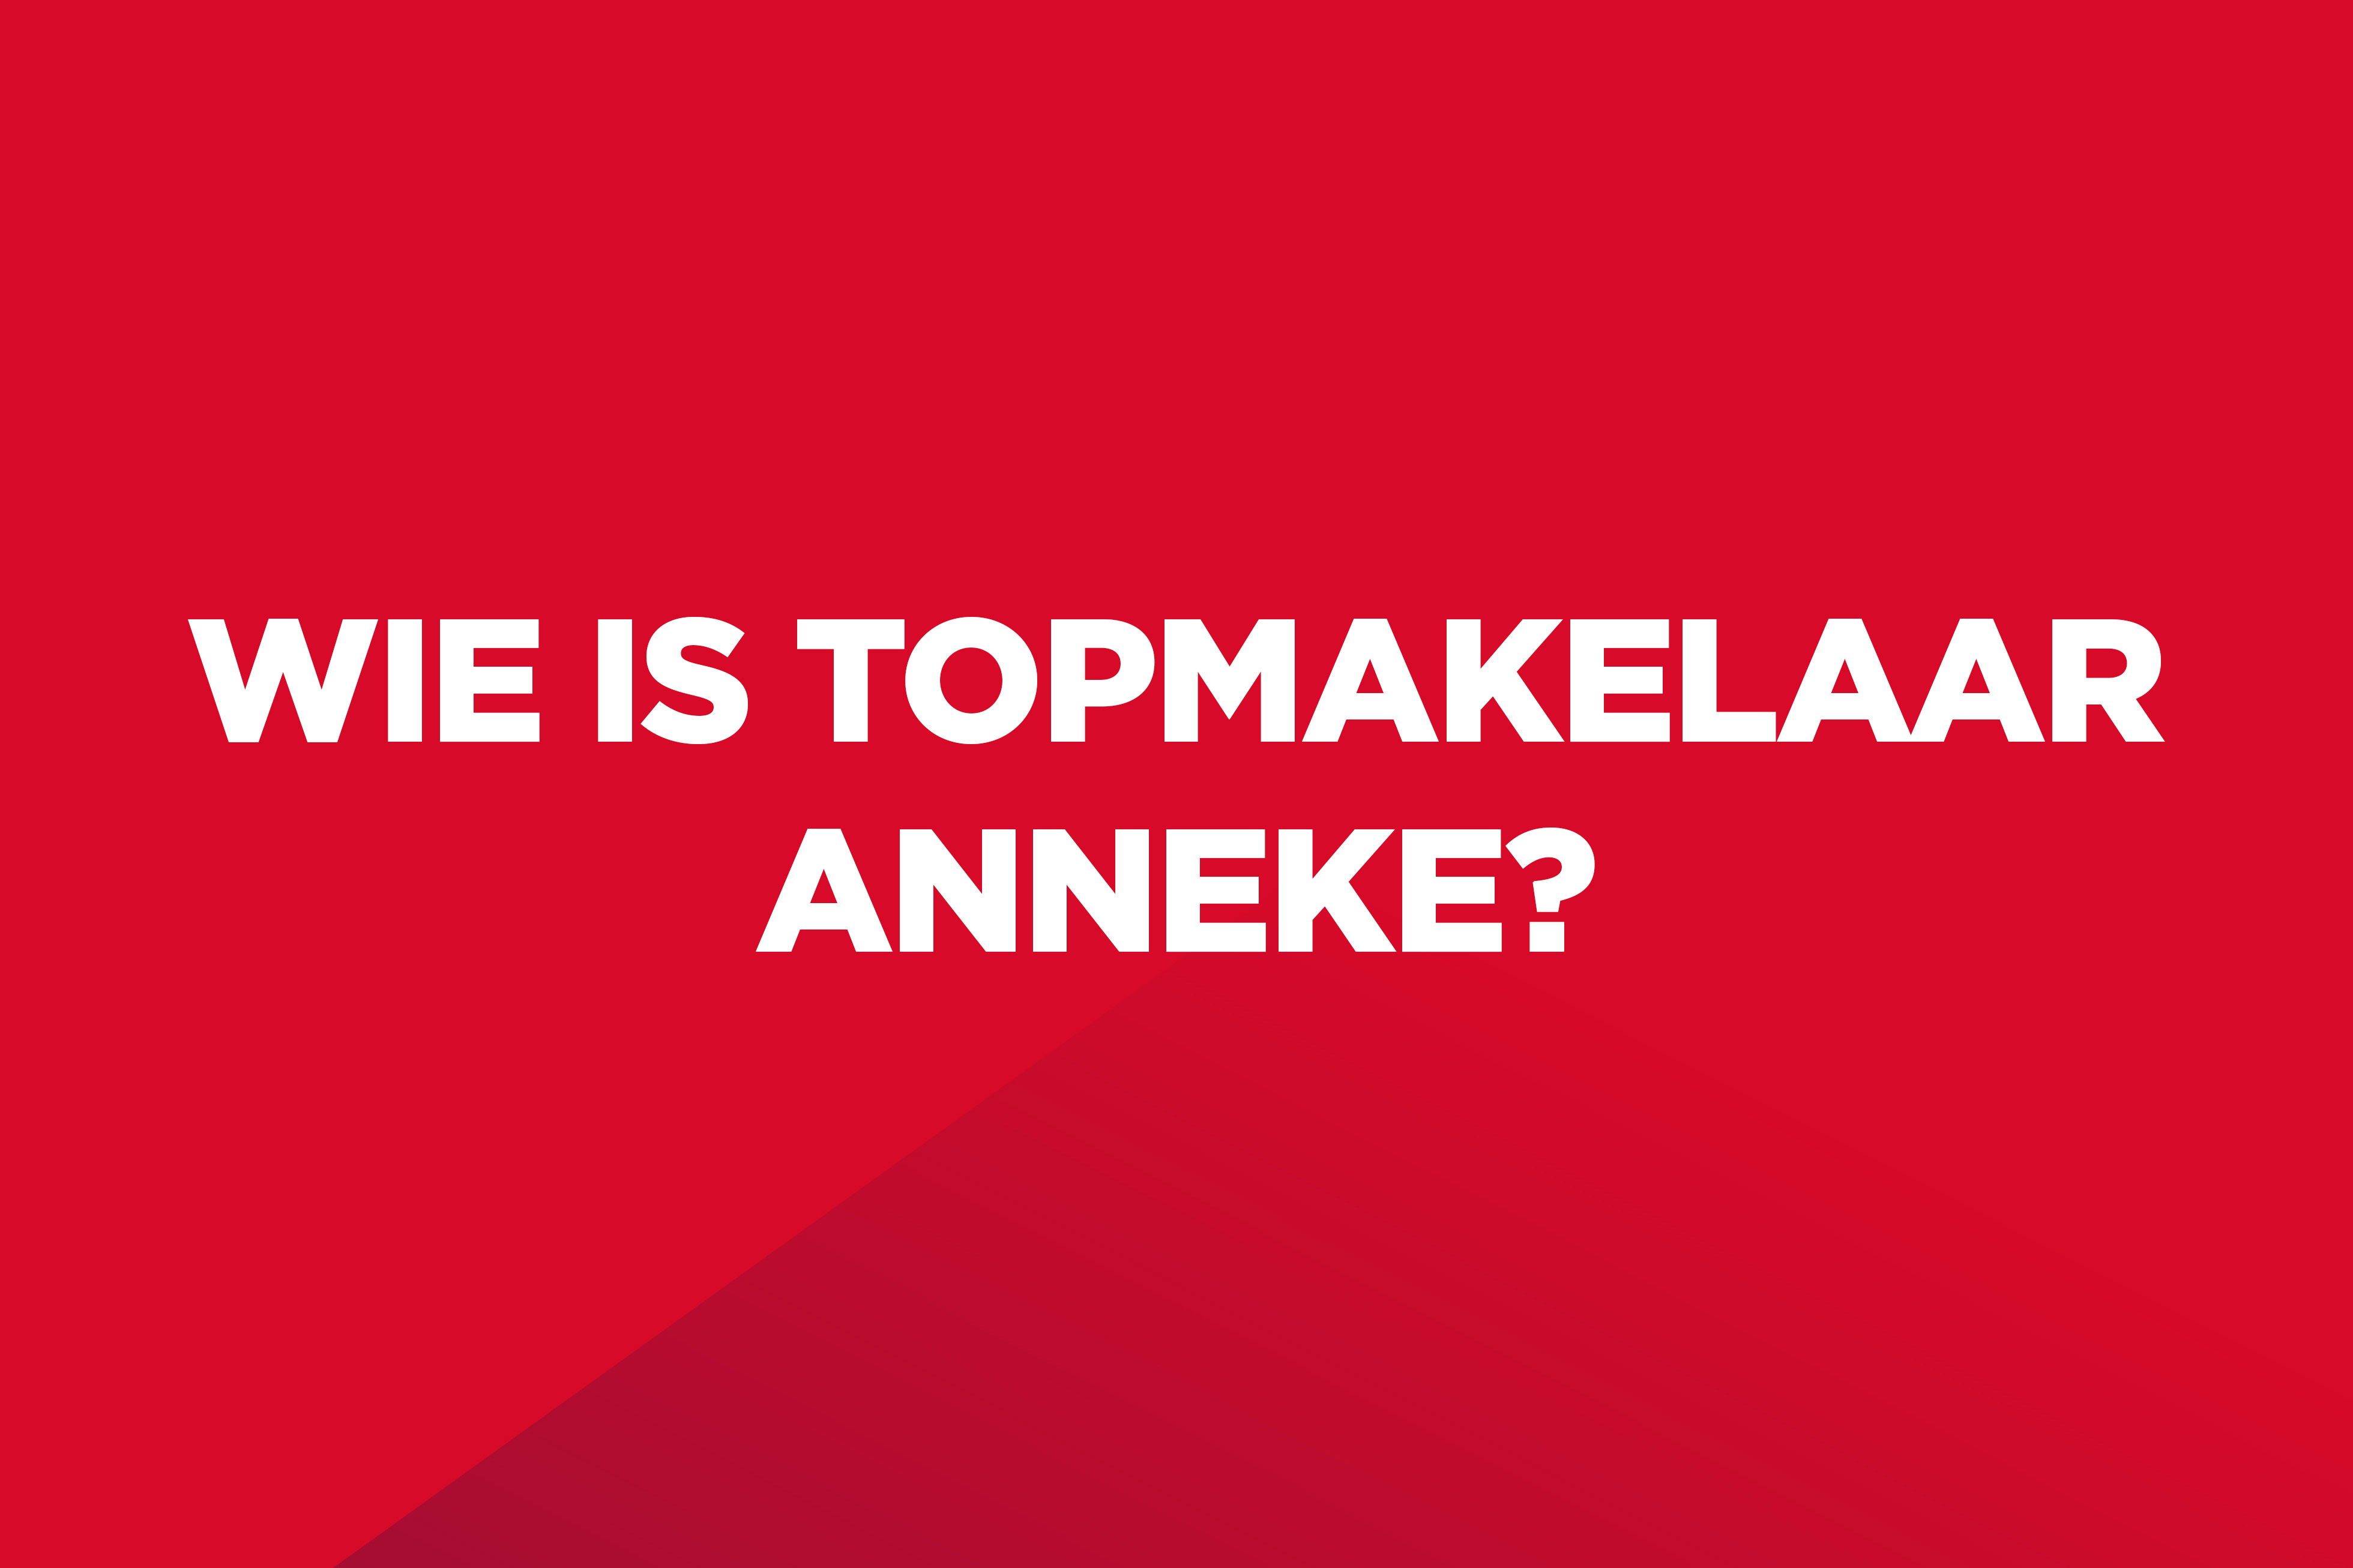 Dit is een rood kleurvlak met witte tekst op: "Wie is Topmakelaar Anneke?".